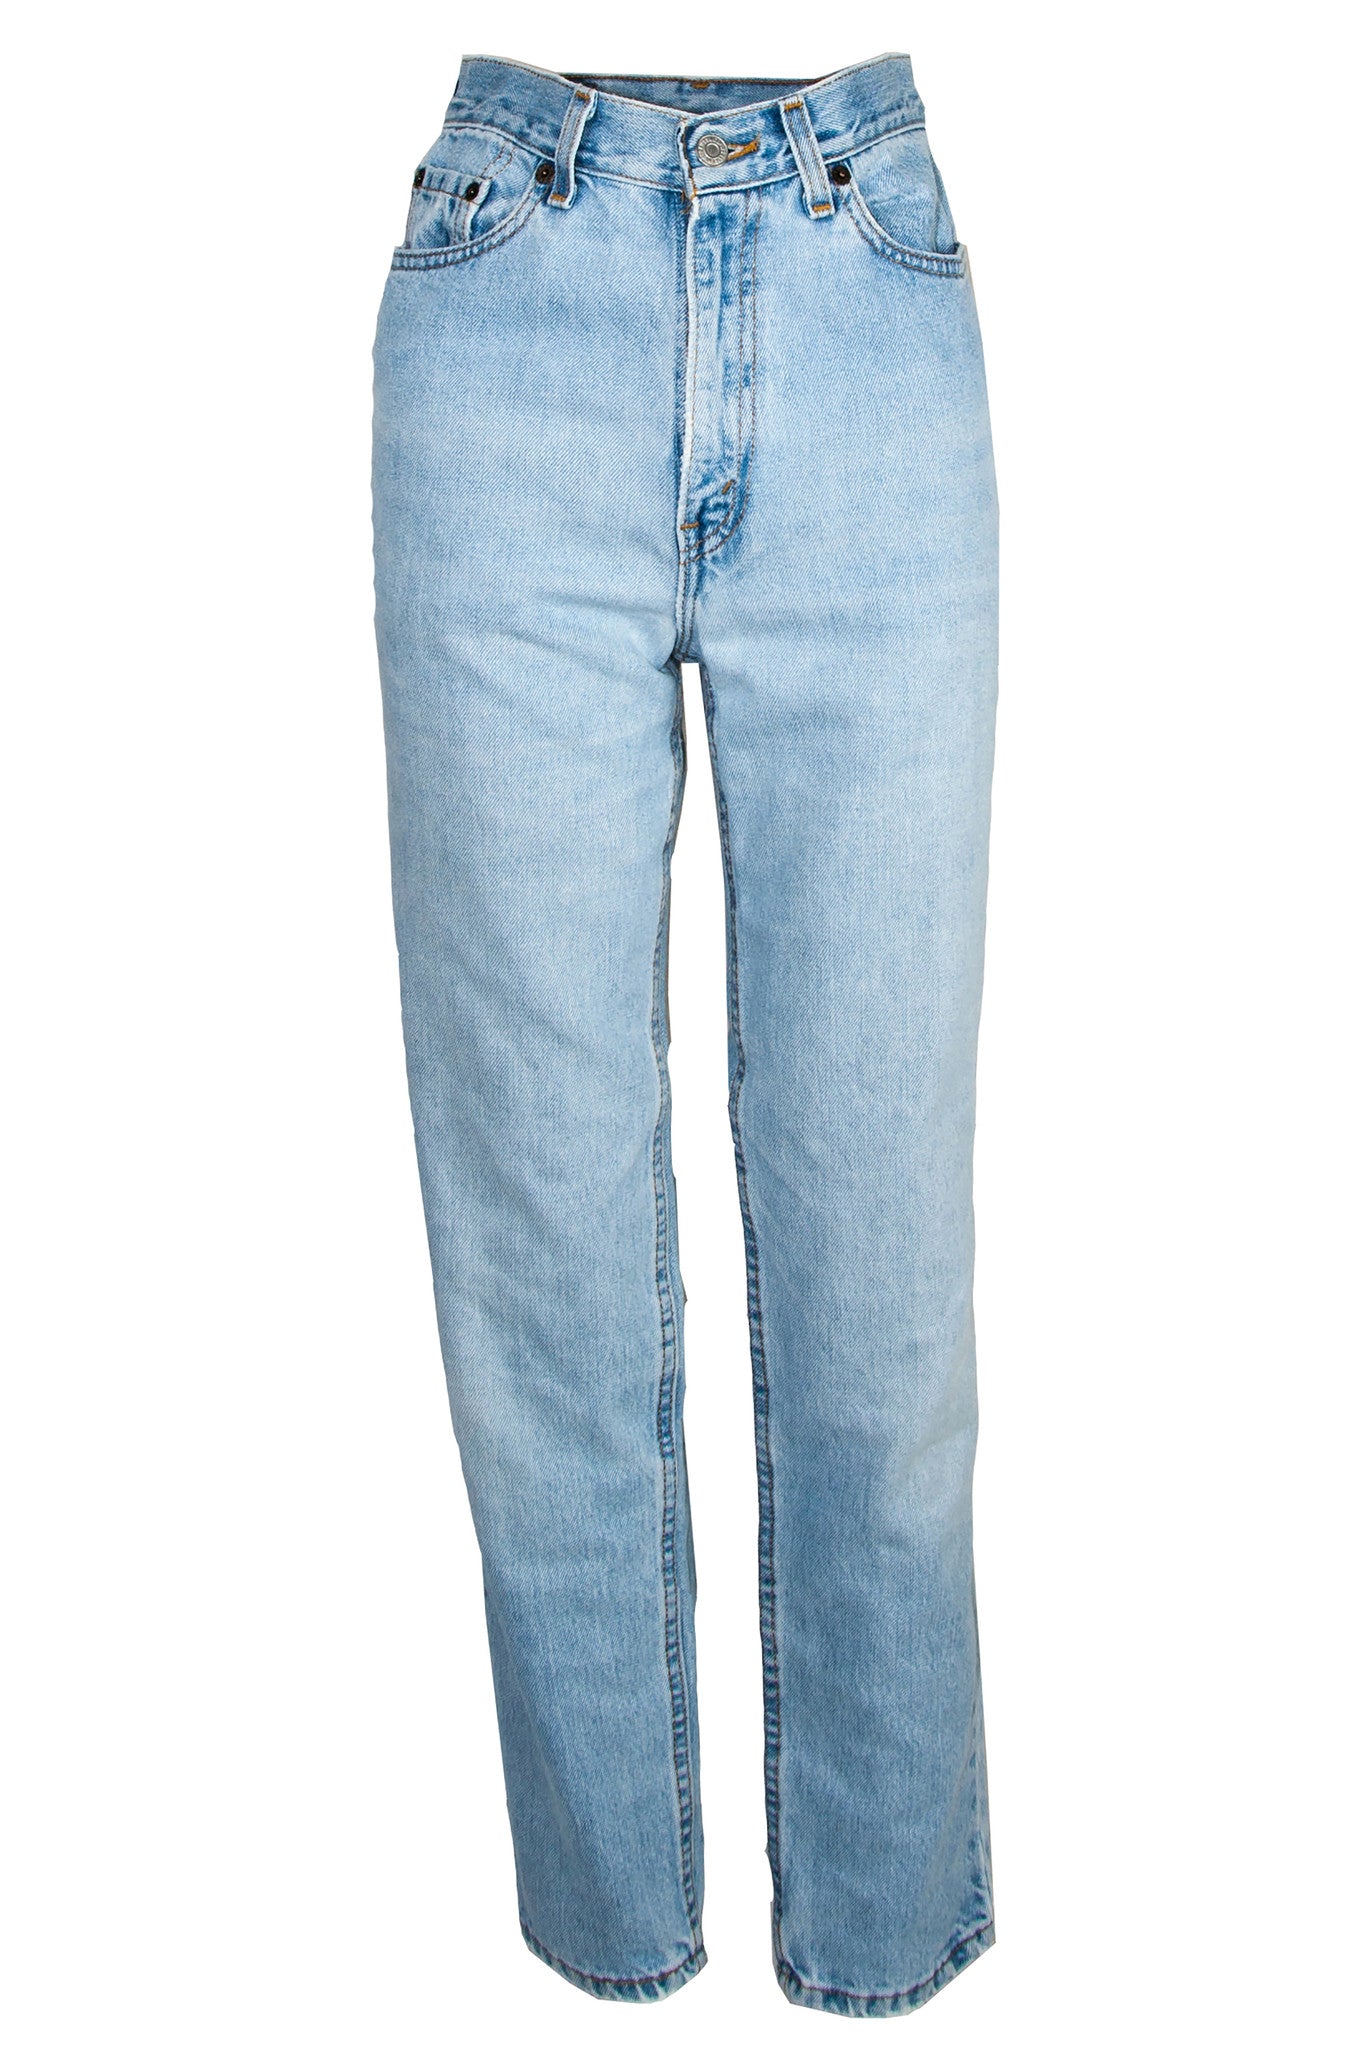 levi's high rise vintage jeans